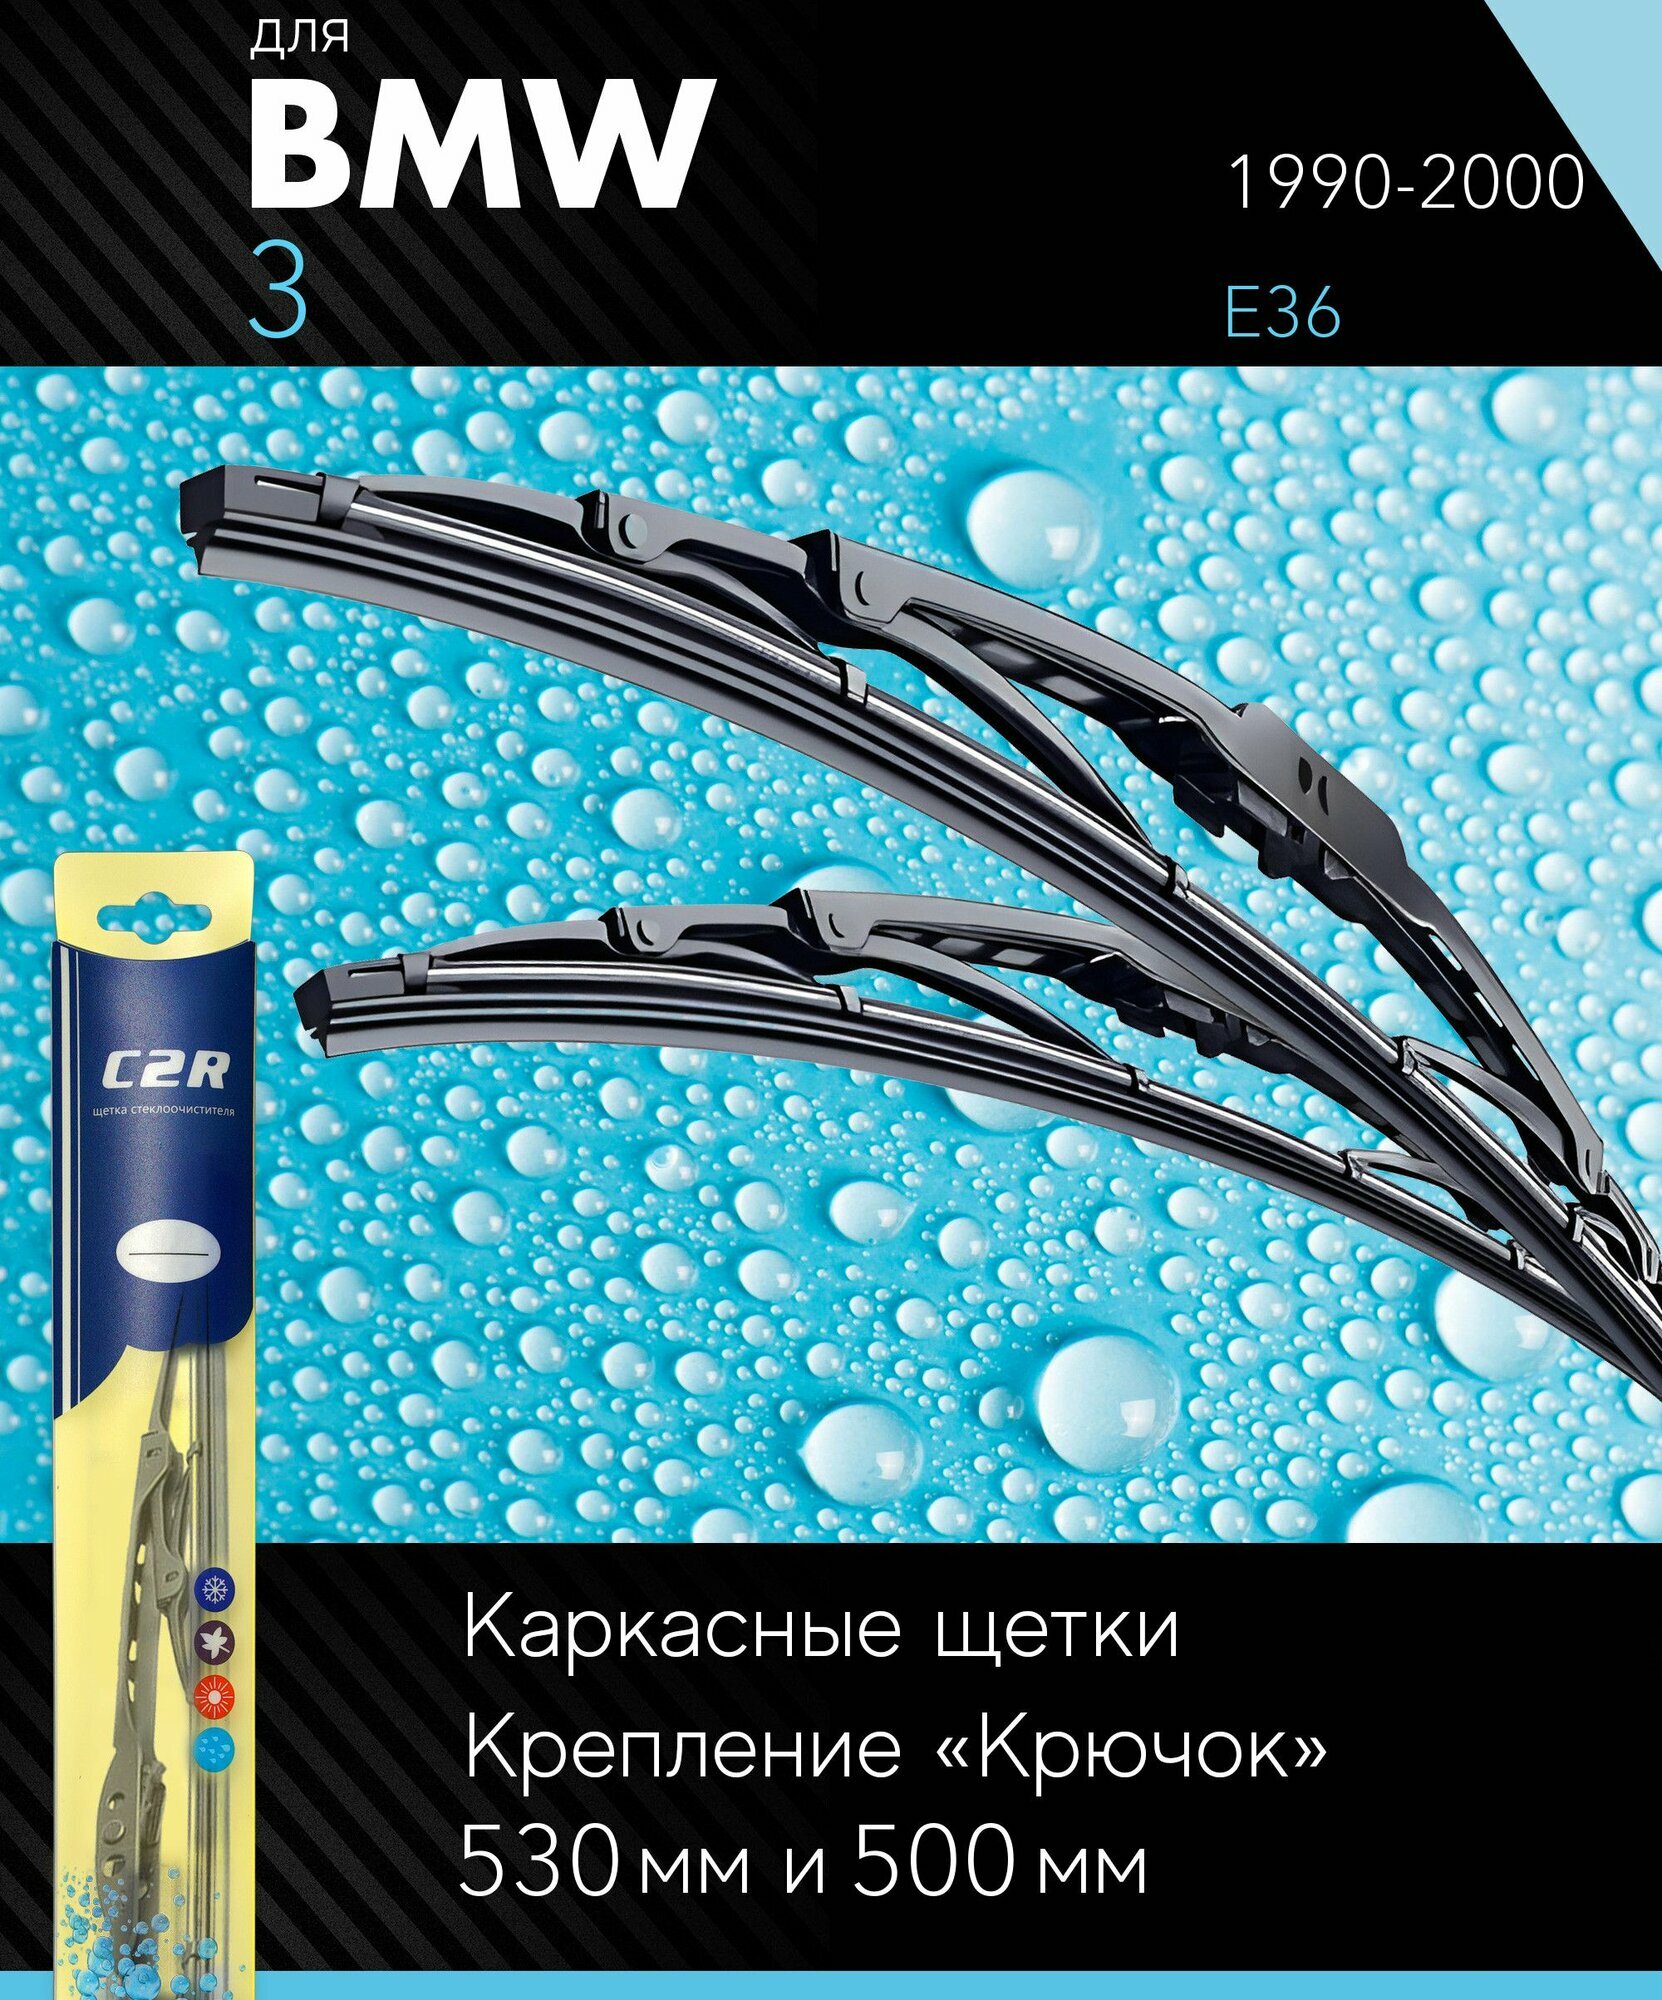 2 щетки стеклоочистителя 530 500 мм на БМВ 3 1990-2000 каркасные дворники комплект для BMW 3 (E36) - C2R